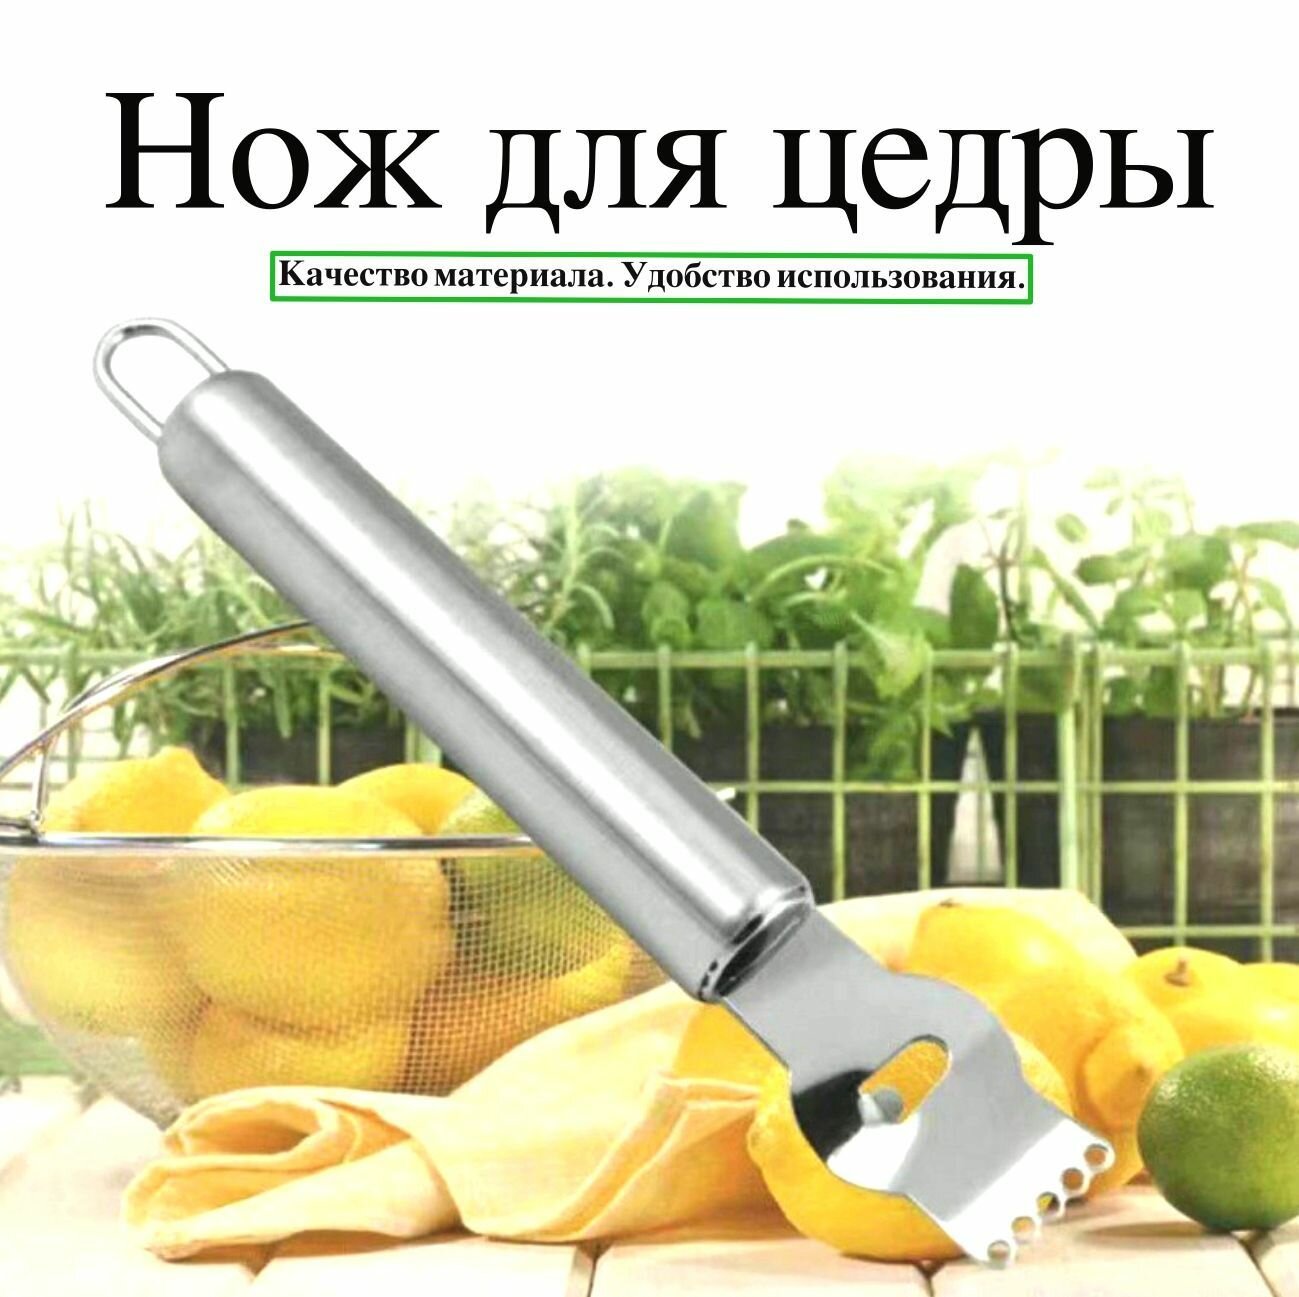 Нож для цедры Garmoni Rqe для легкой и аккуратной сборки цедры, фигурной вырезки и декора цитрусовых лимонов и апельсинов, из нержавеющей стали.